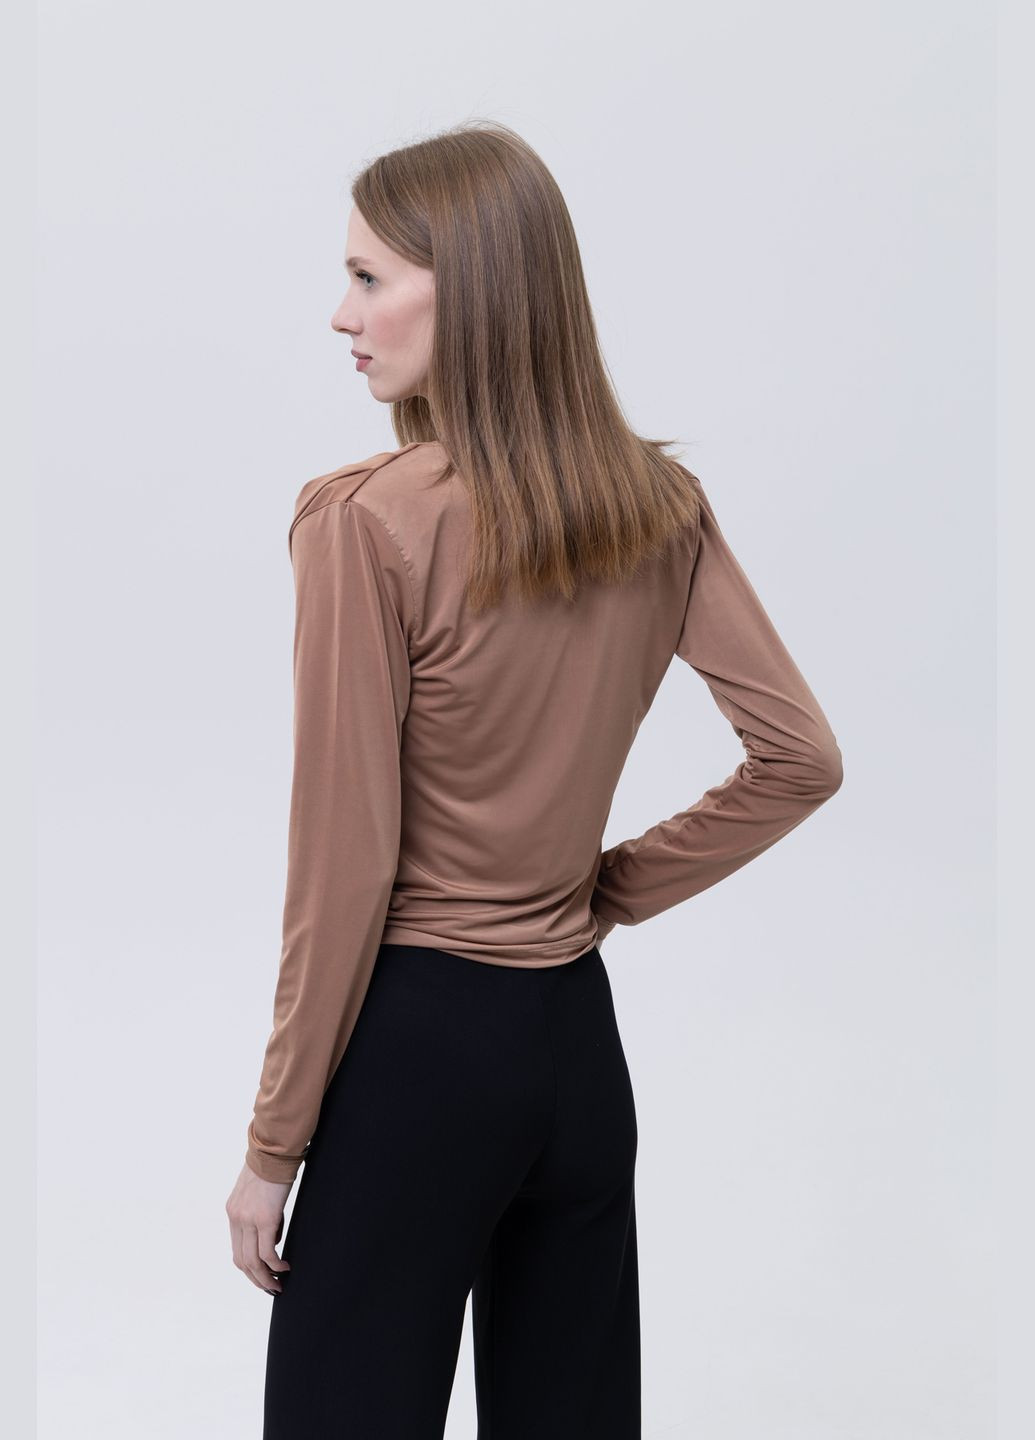 Бронзовая демисезонная женская блуза с длинным рукавом цвет бронзовый цб-00233759 TILLE